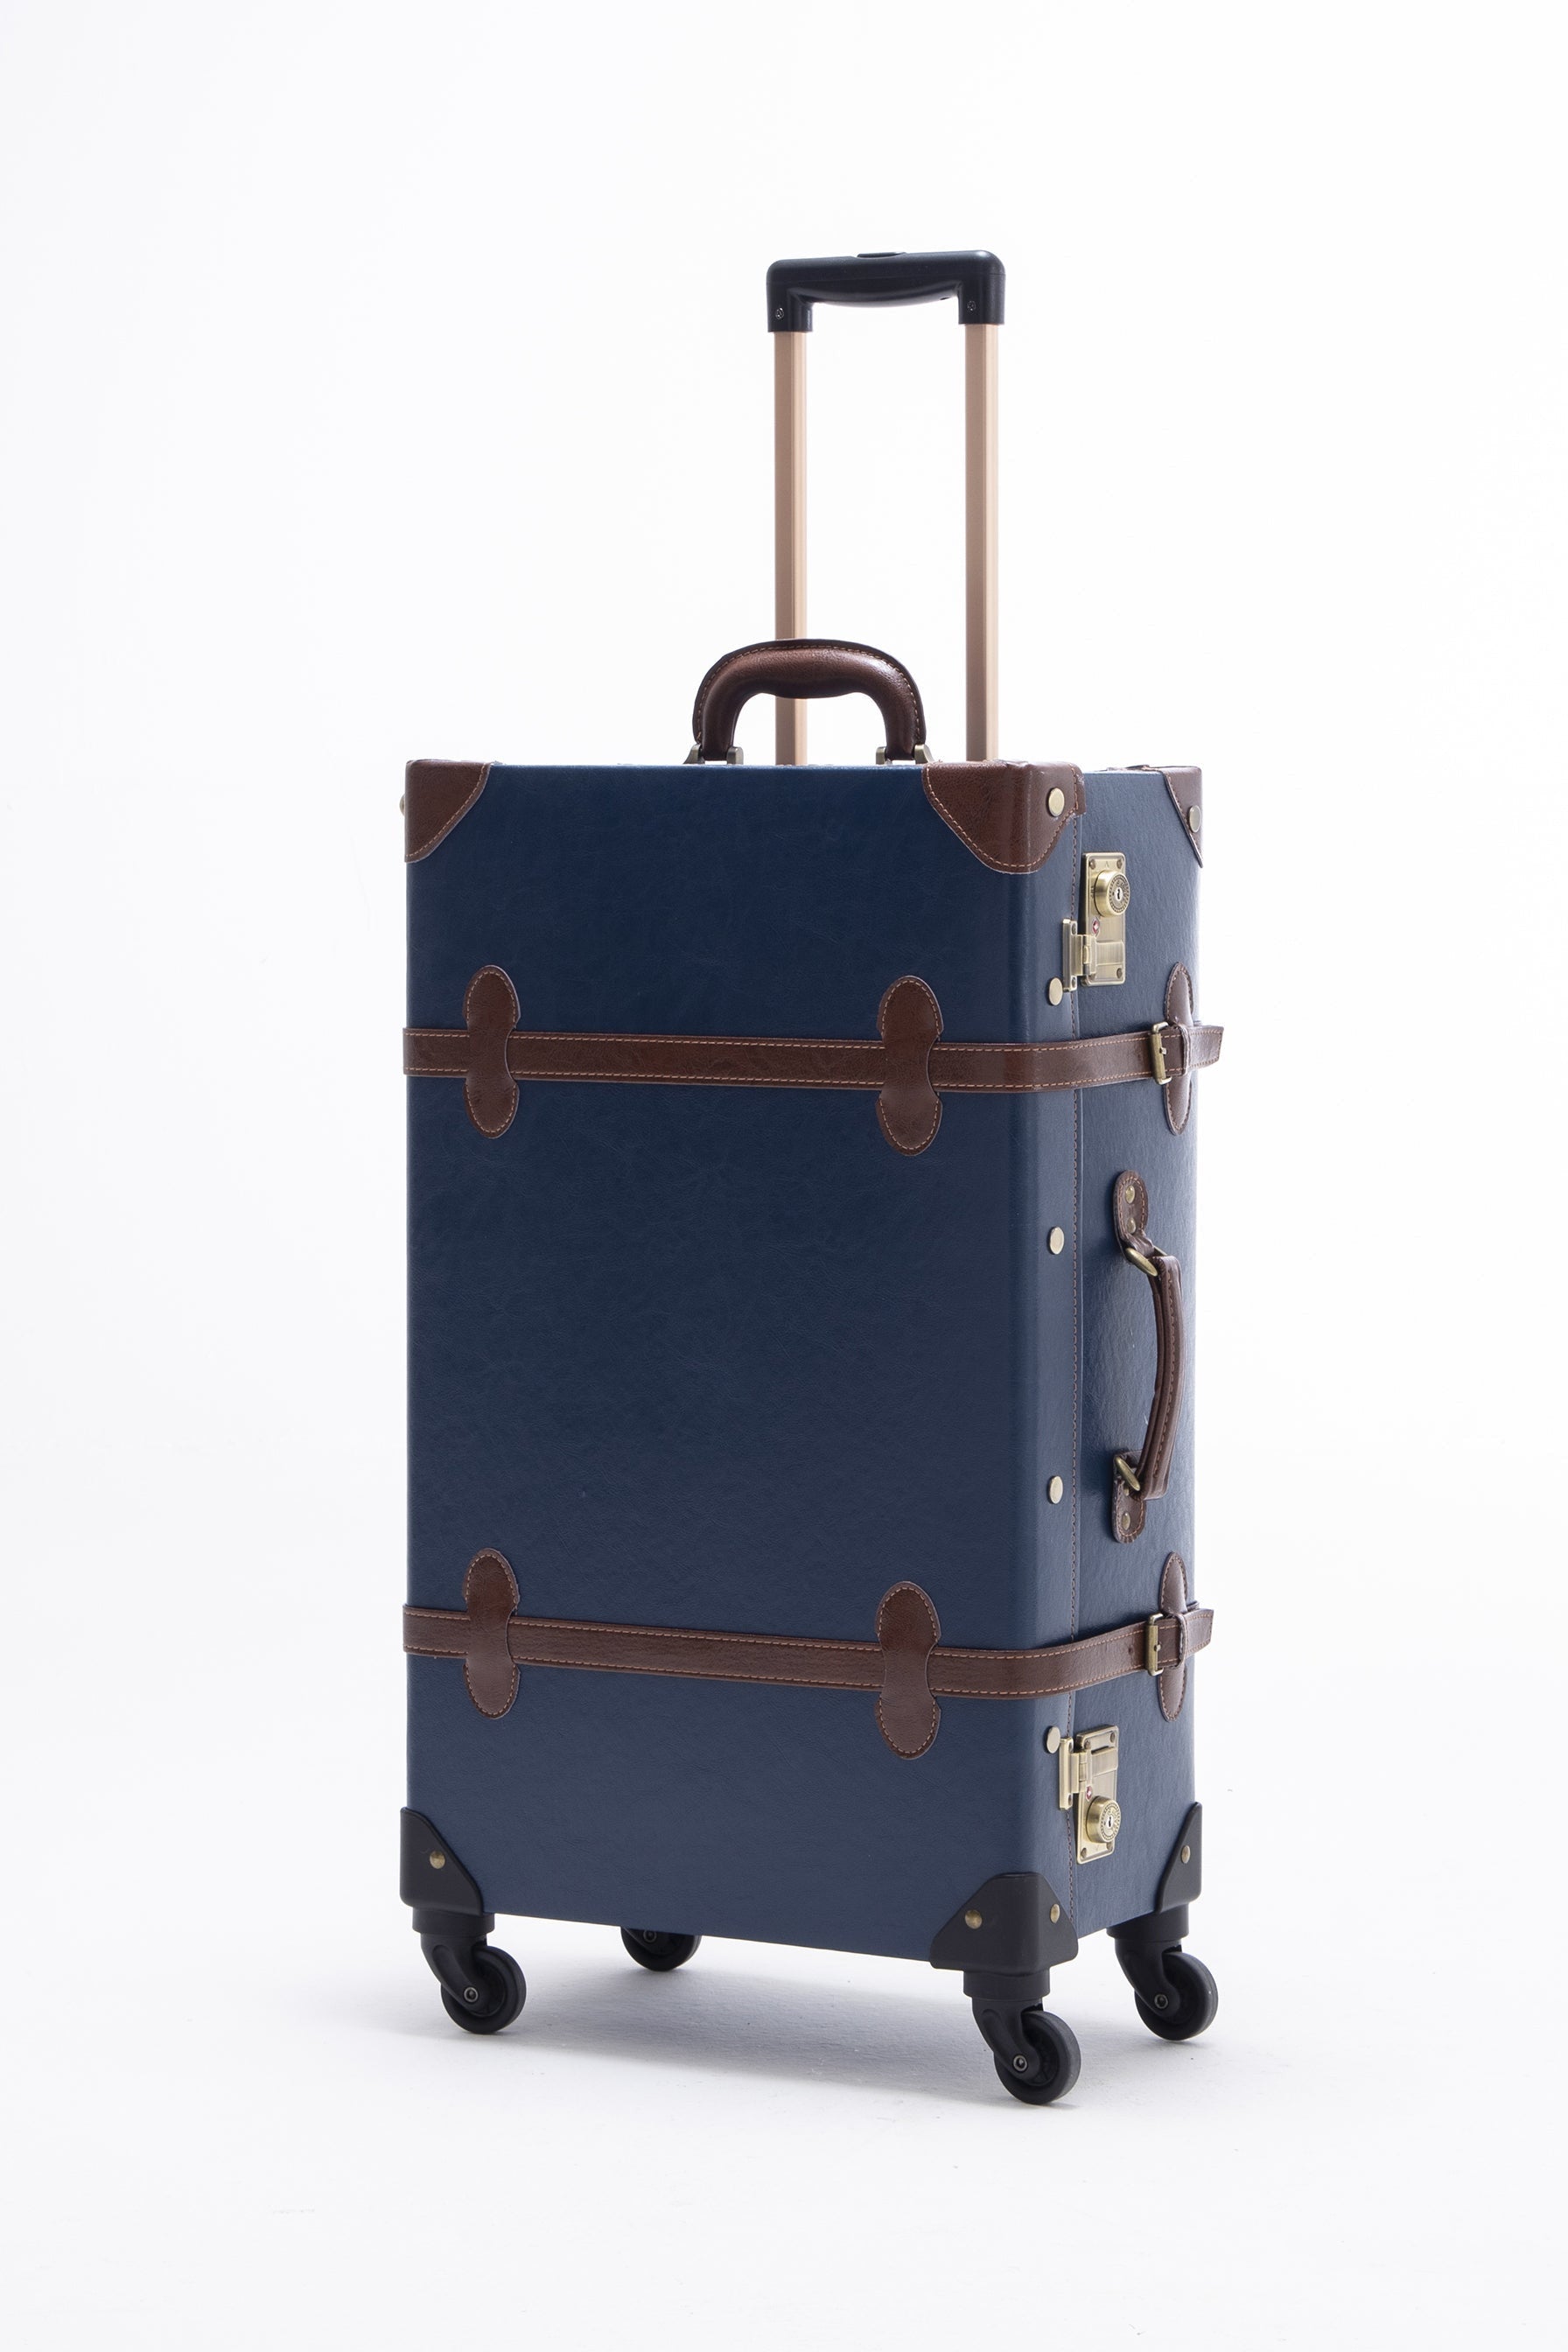 (United States) Minimalism 3 Pieces Luggage Set - Navy Blue's